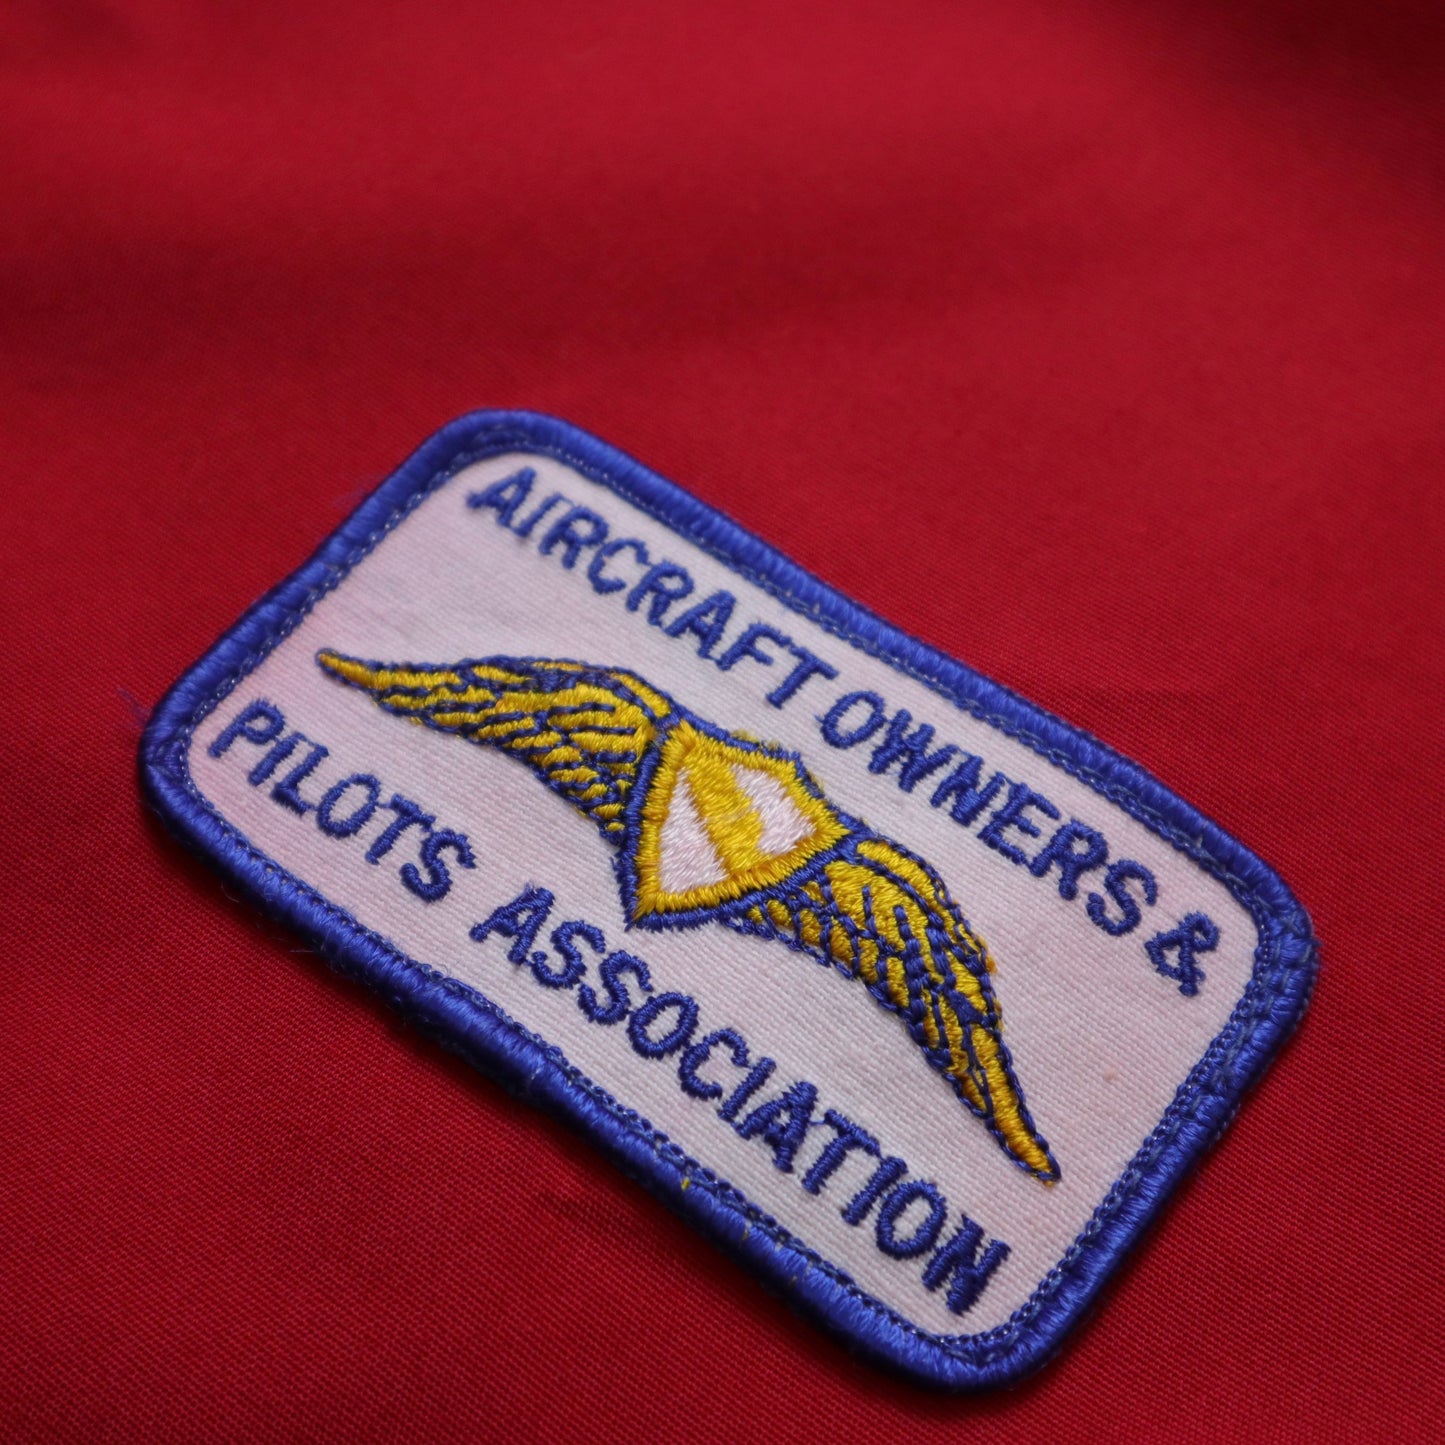 1970s AOPA Flight Apparel Bomber Jacket 機師協會飛行員外套